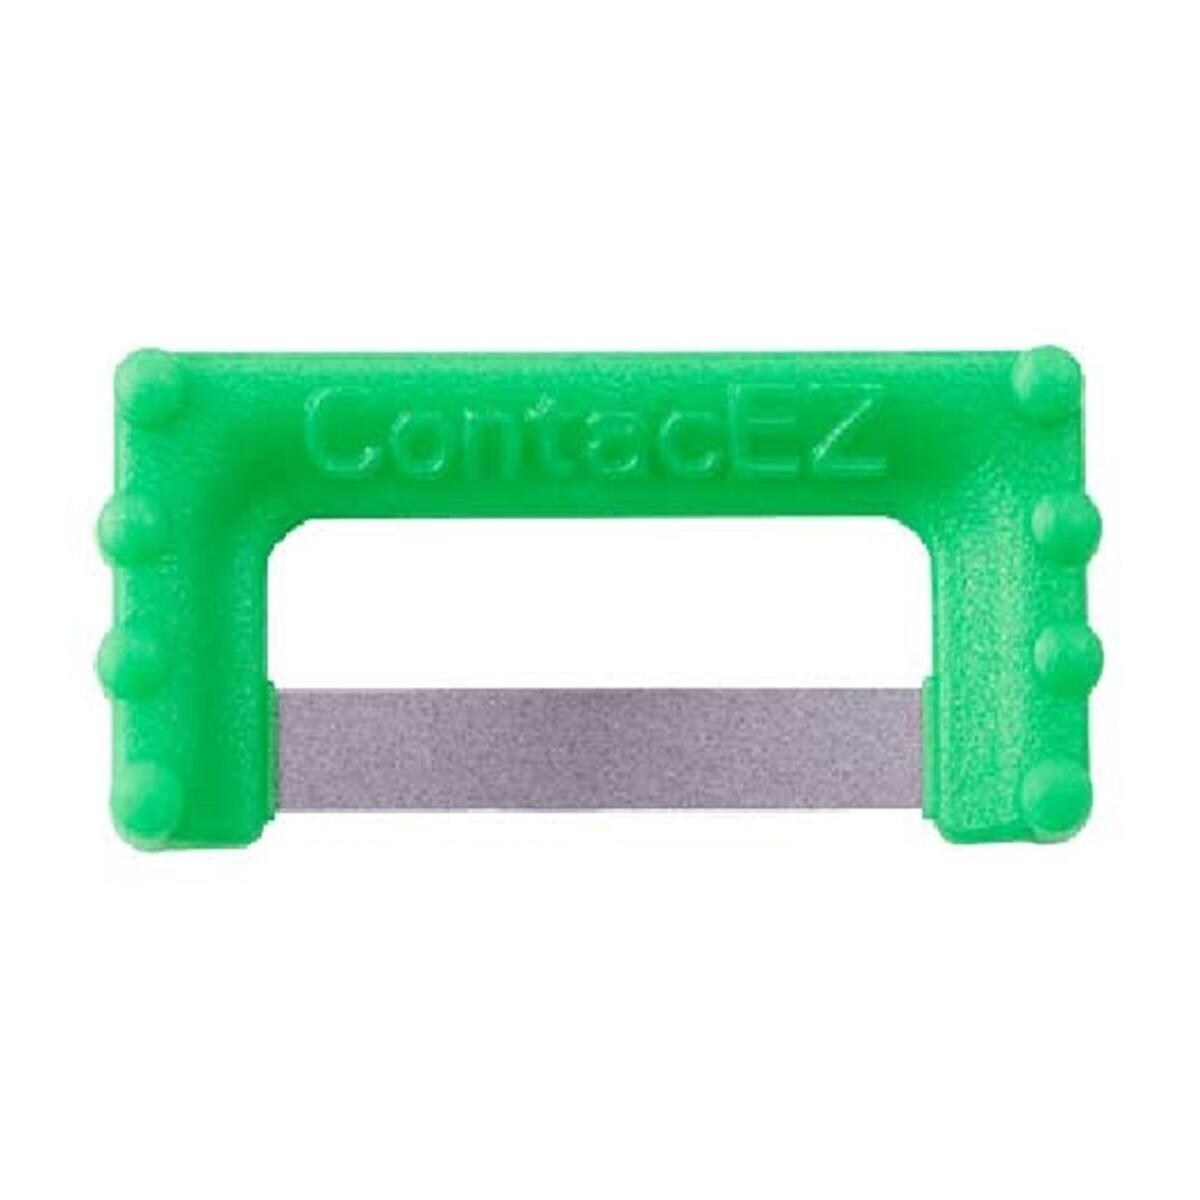 ContacEZ IPR - recharge - REF. 32616 - vert 0,20mm, 16 pcs